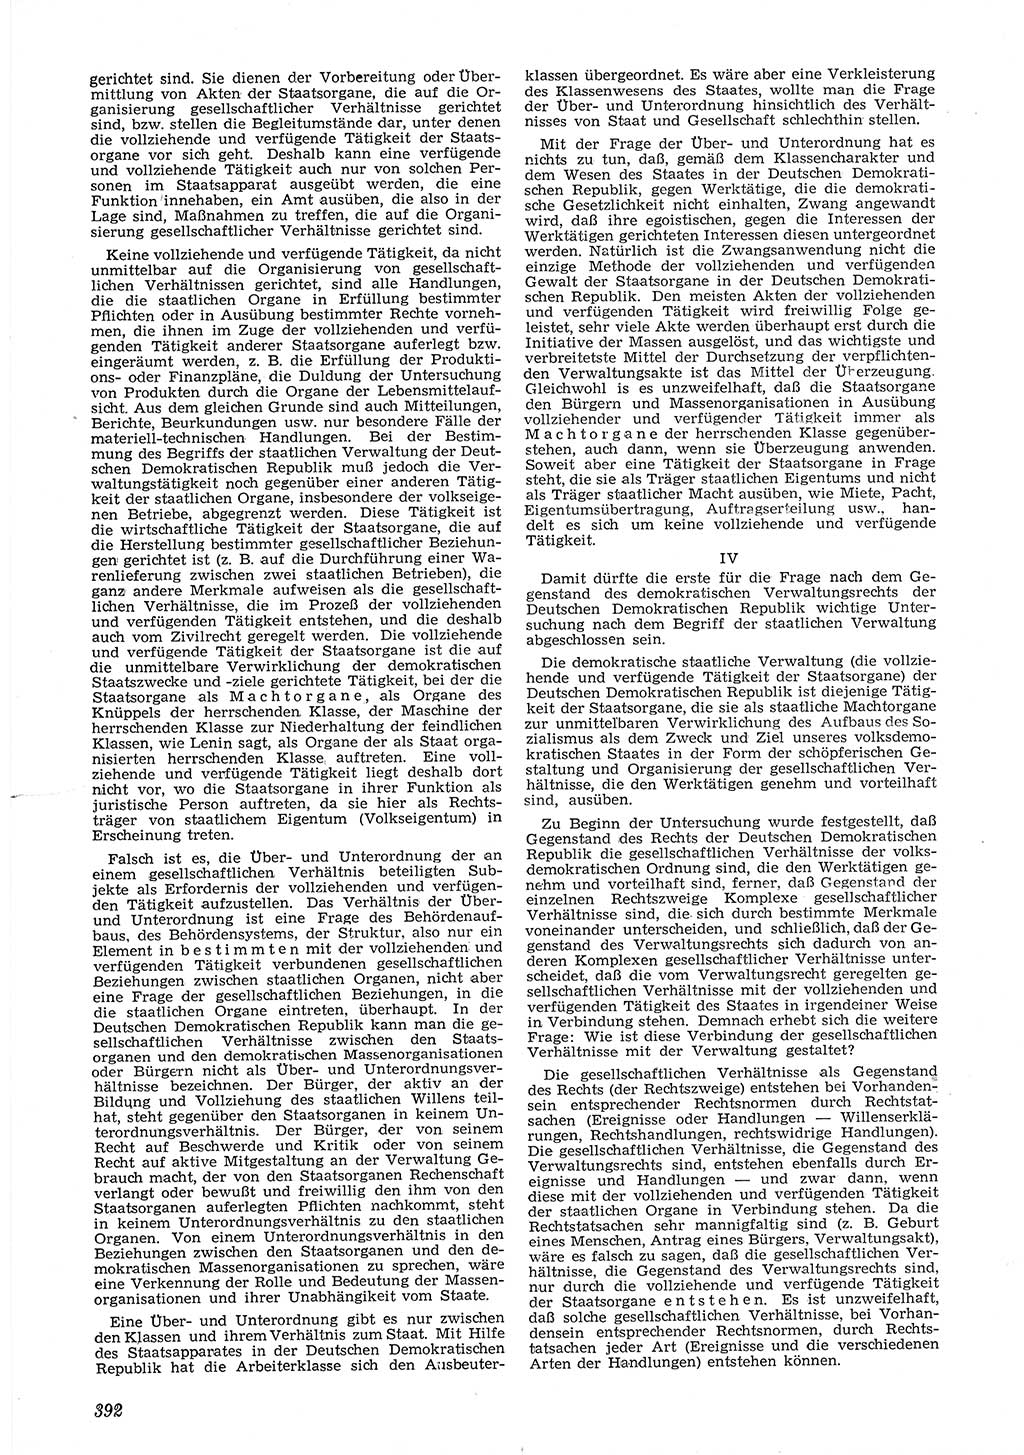 Neue Justiz (NJ), Zeitschrift für Recht und Rechtswissenschaft [Deutsche Demokratische Republik (DDR)], 6. Jahrgang 1952, Seite 392 (NJ DDR 1952, S. 392)